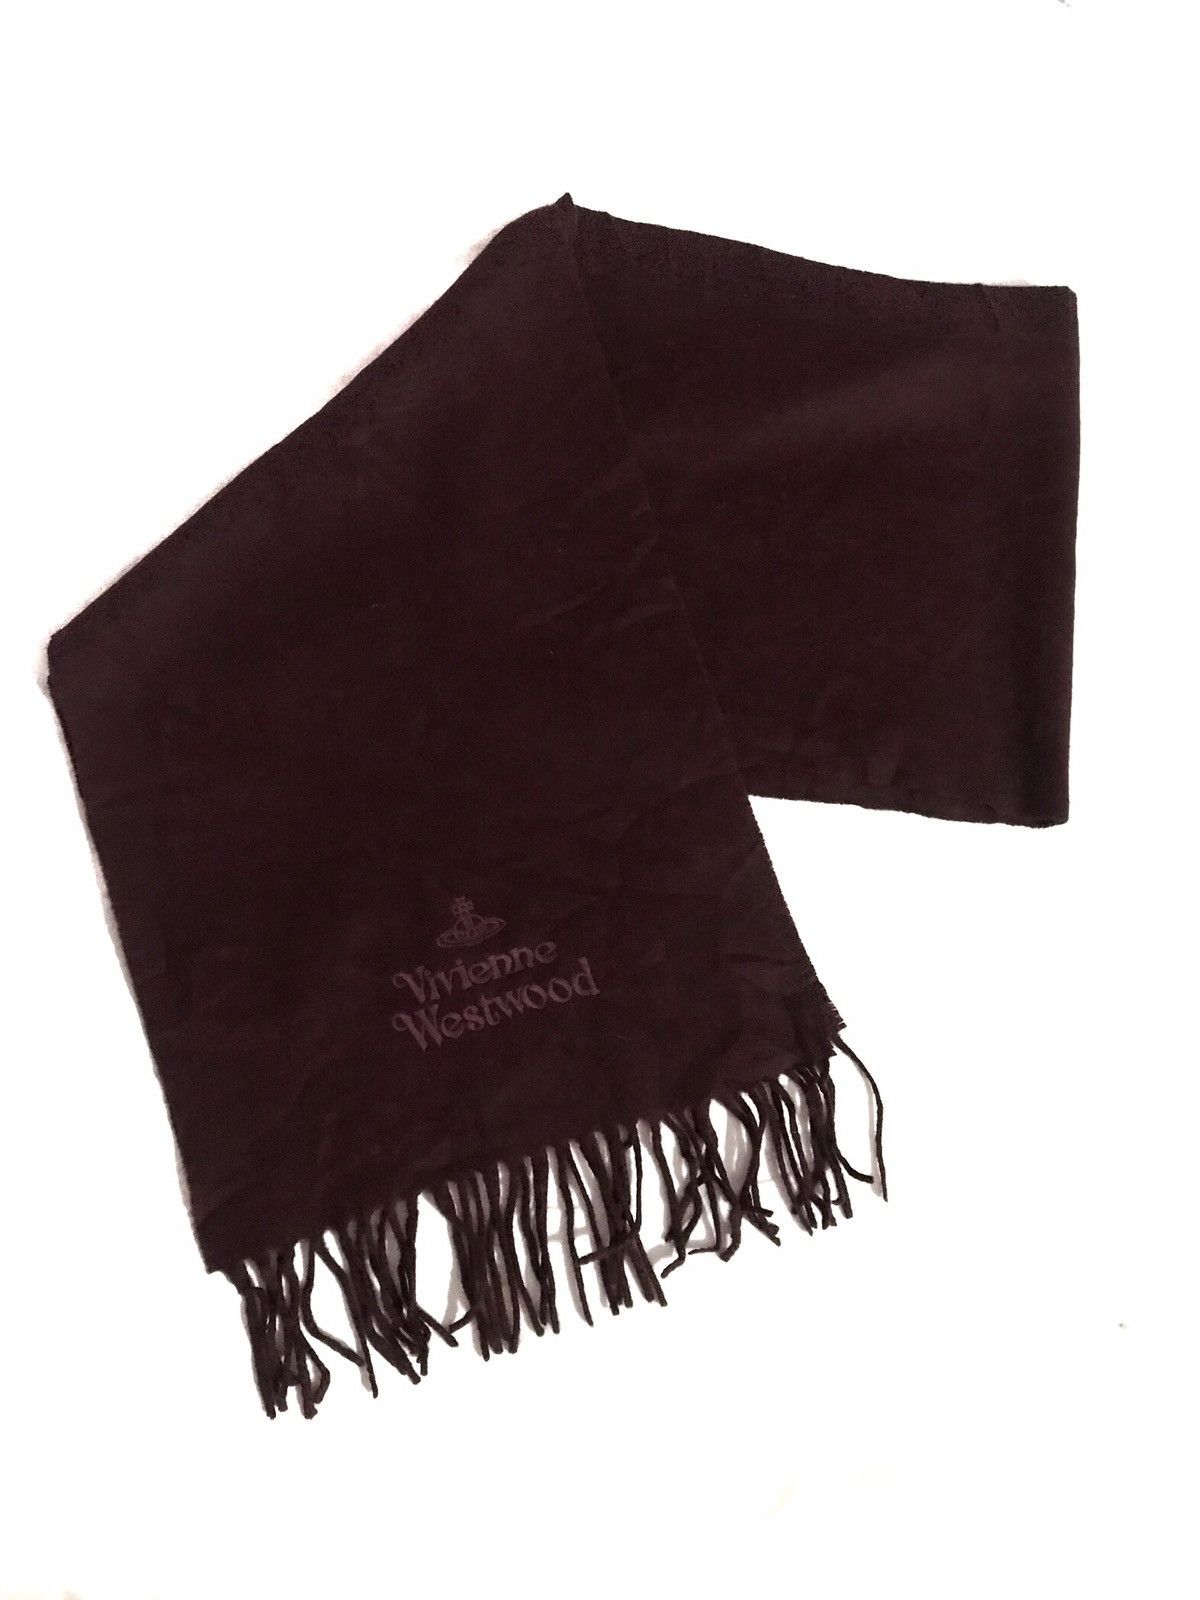 Vivienne Westwood Wool Scarf Muffler Made in Italy - 2